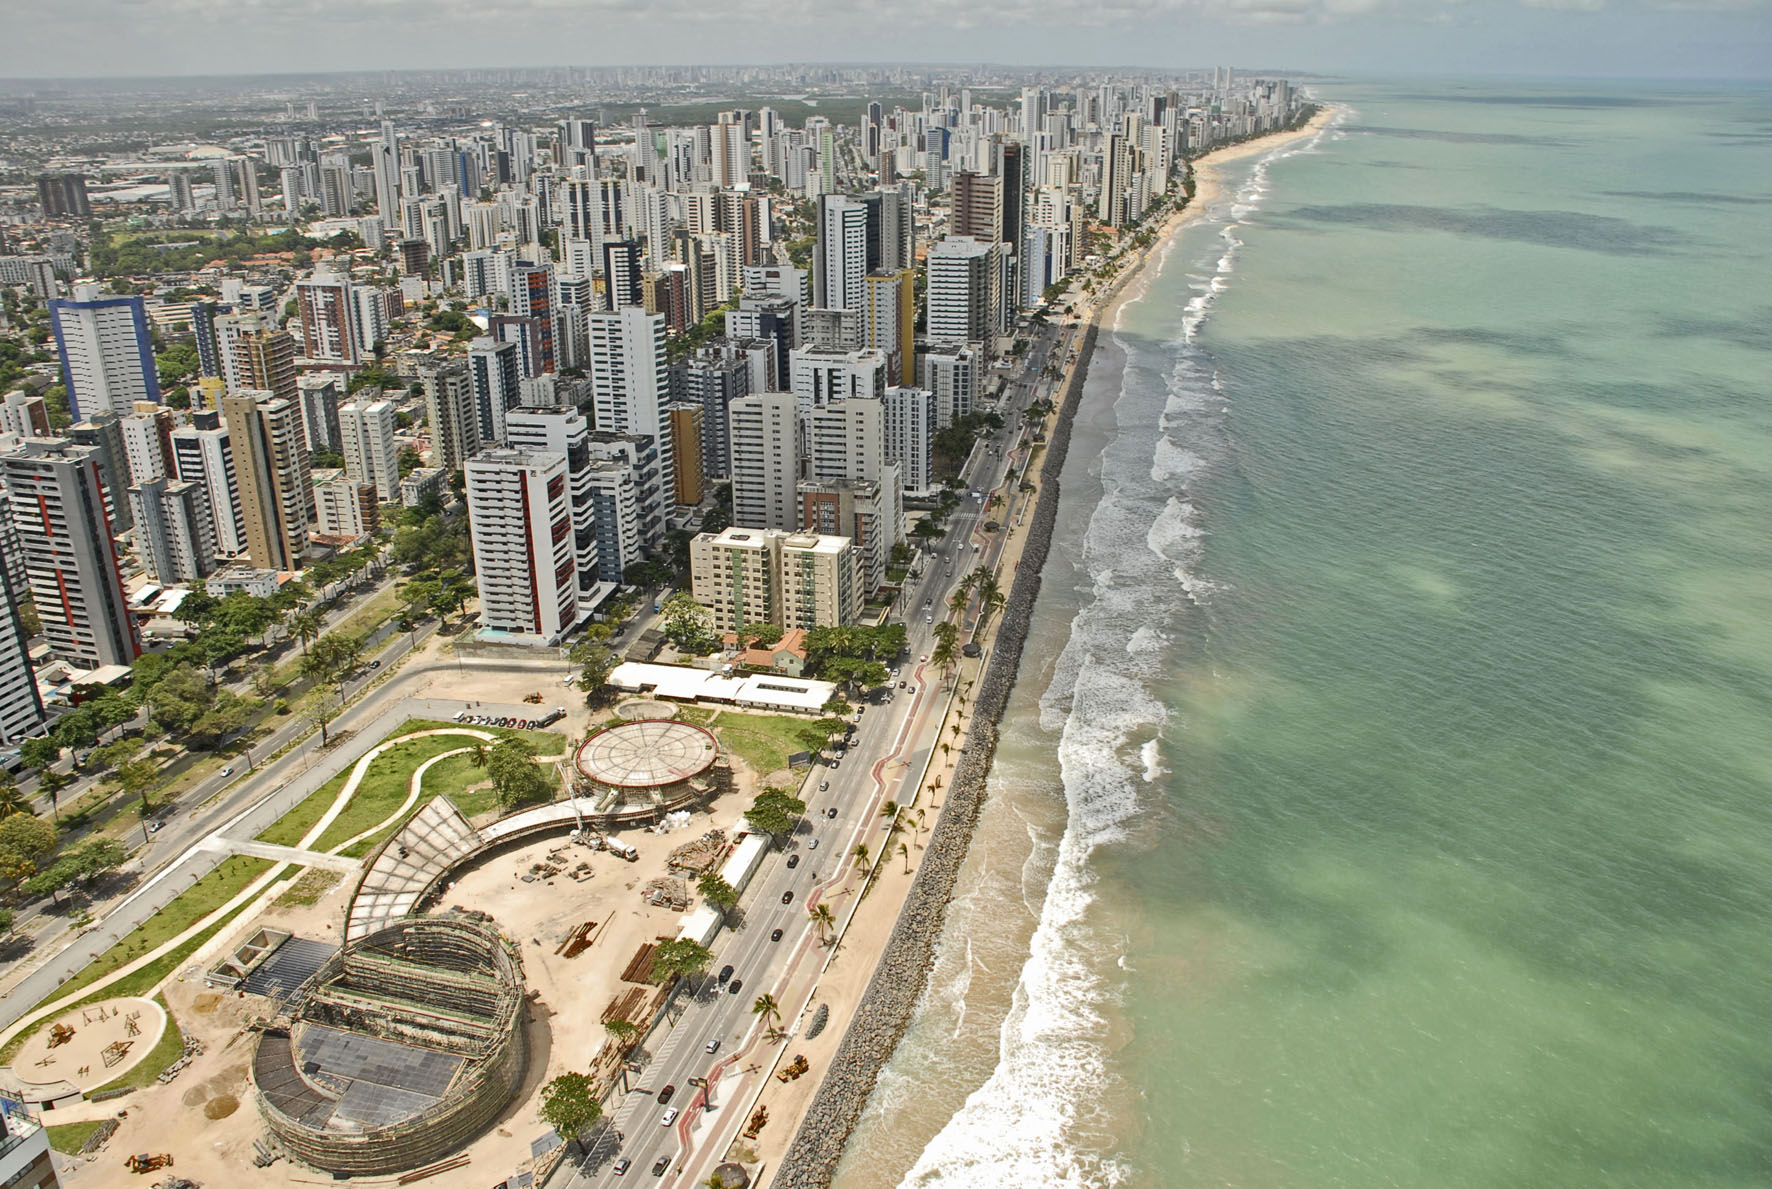 Découvrez la ville de Recife dans la région Nord-Est, surnommée la Venise Brésilienne